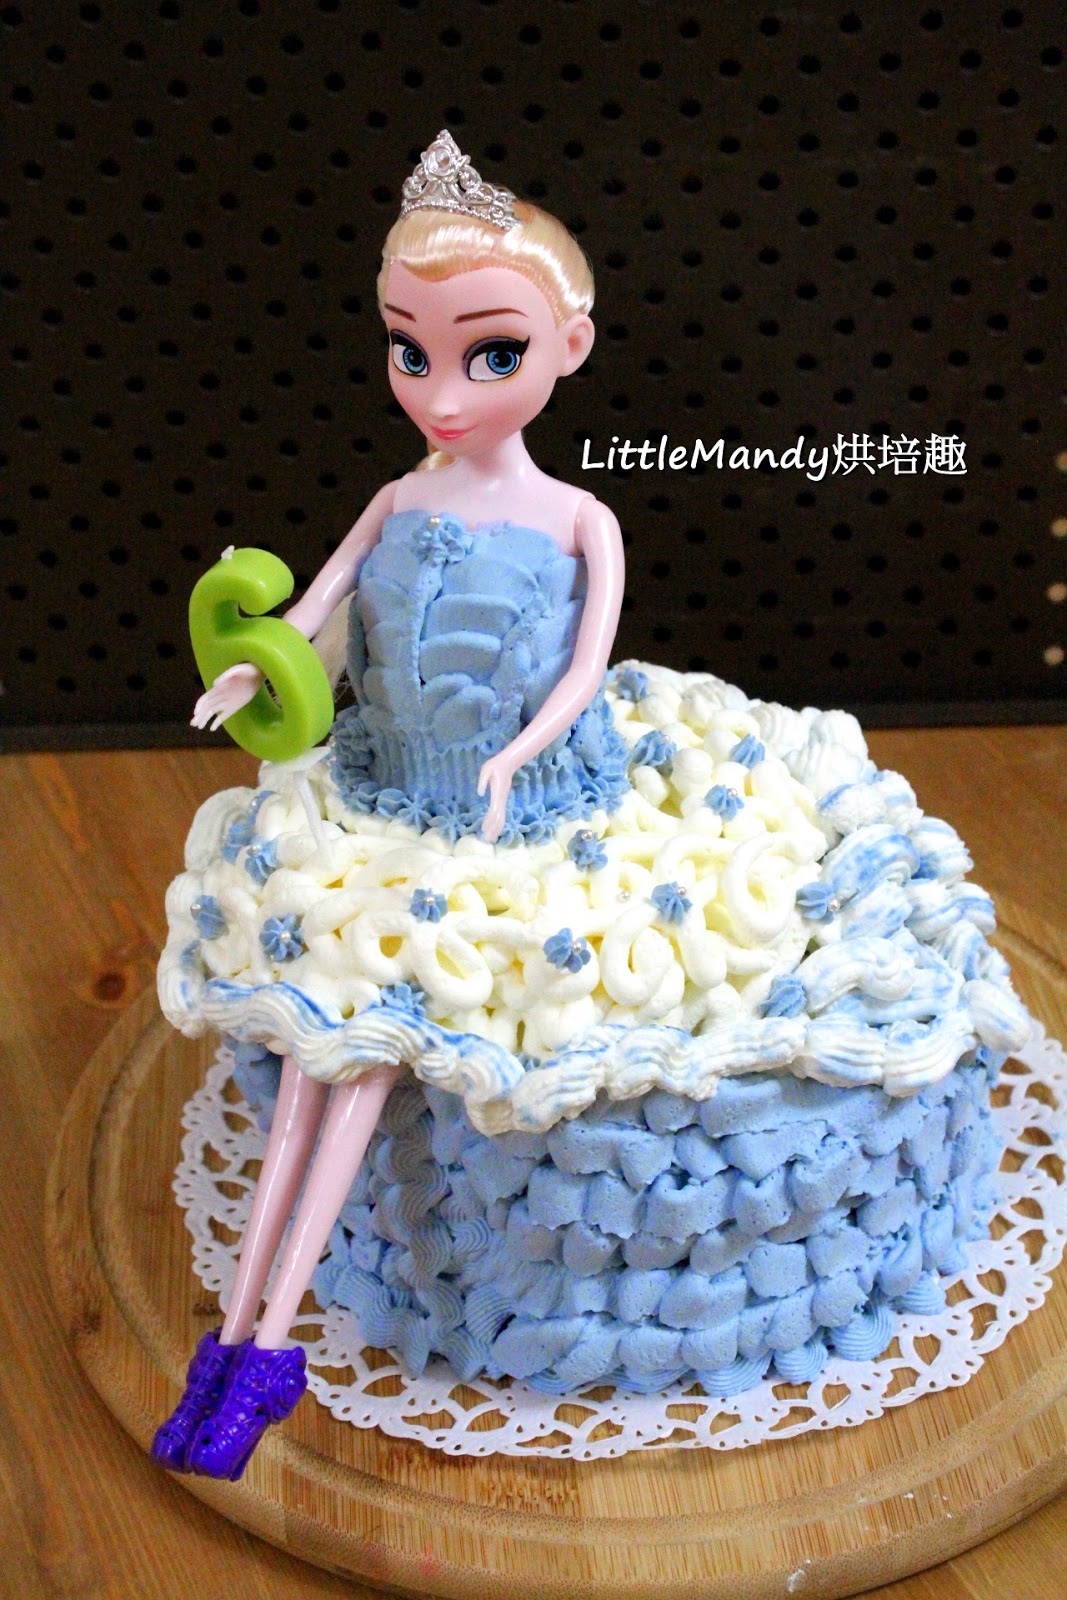 公主女孩翻糖造型蛋糕 | 翻糖造型蛋糕 - Daisycafe